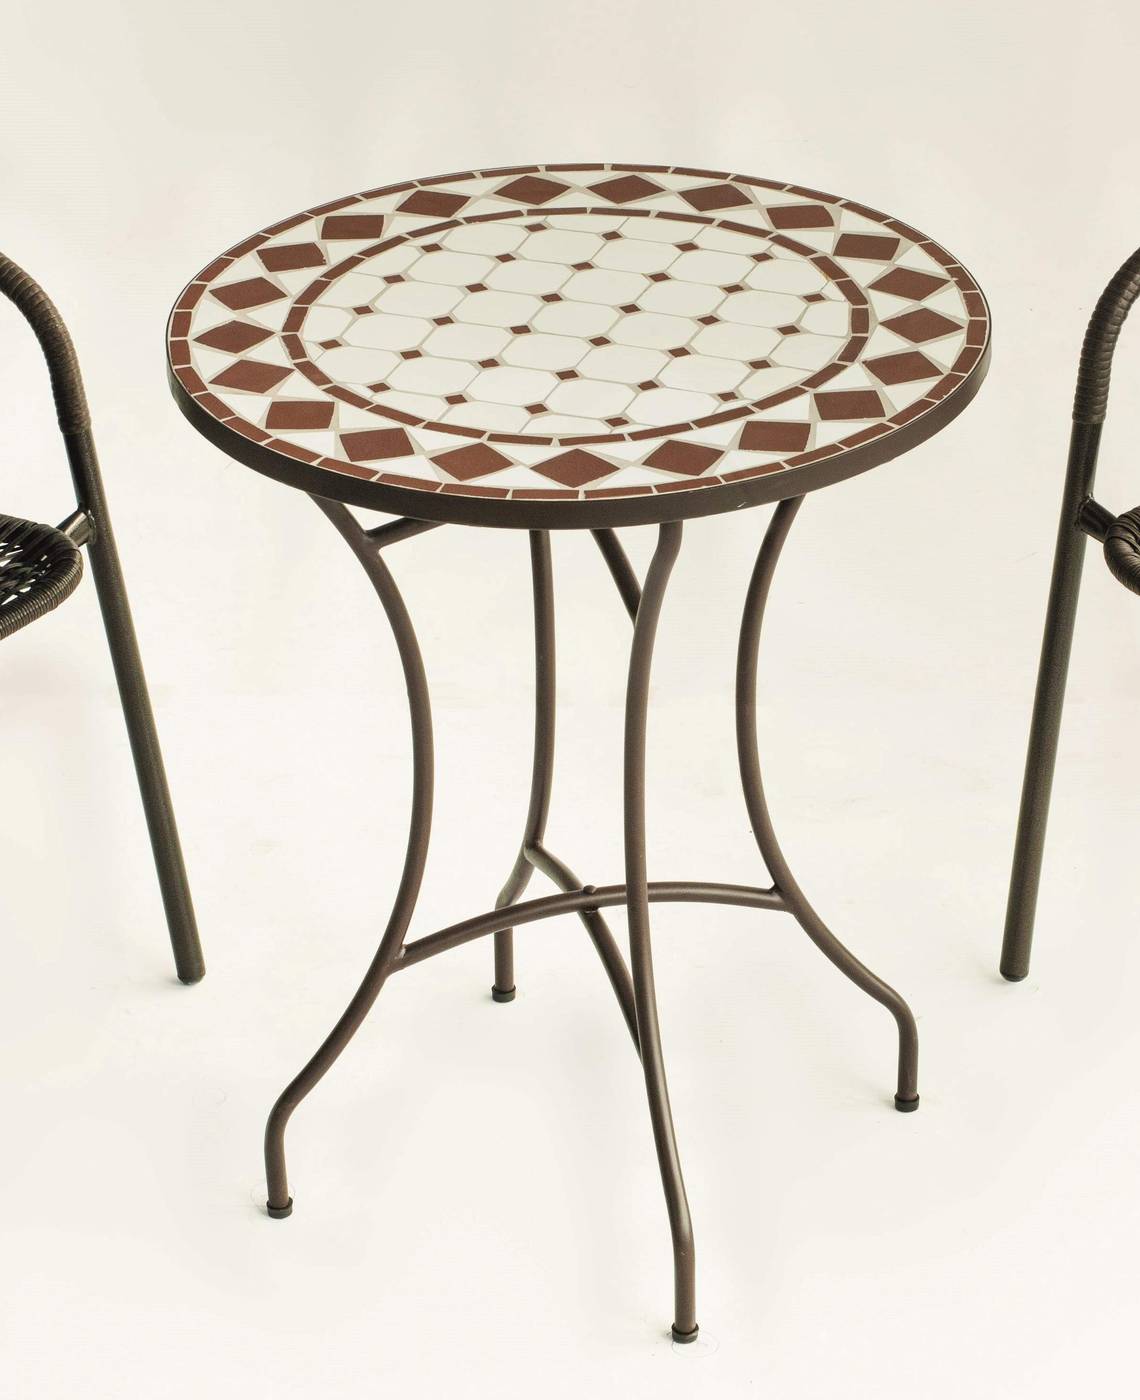 Conjunto Mosaico Austin-Marsel - Mesa de forja color bronce, con tablero mosaico de 60 cm + 2 sillones apilables de aluminio con cojín.